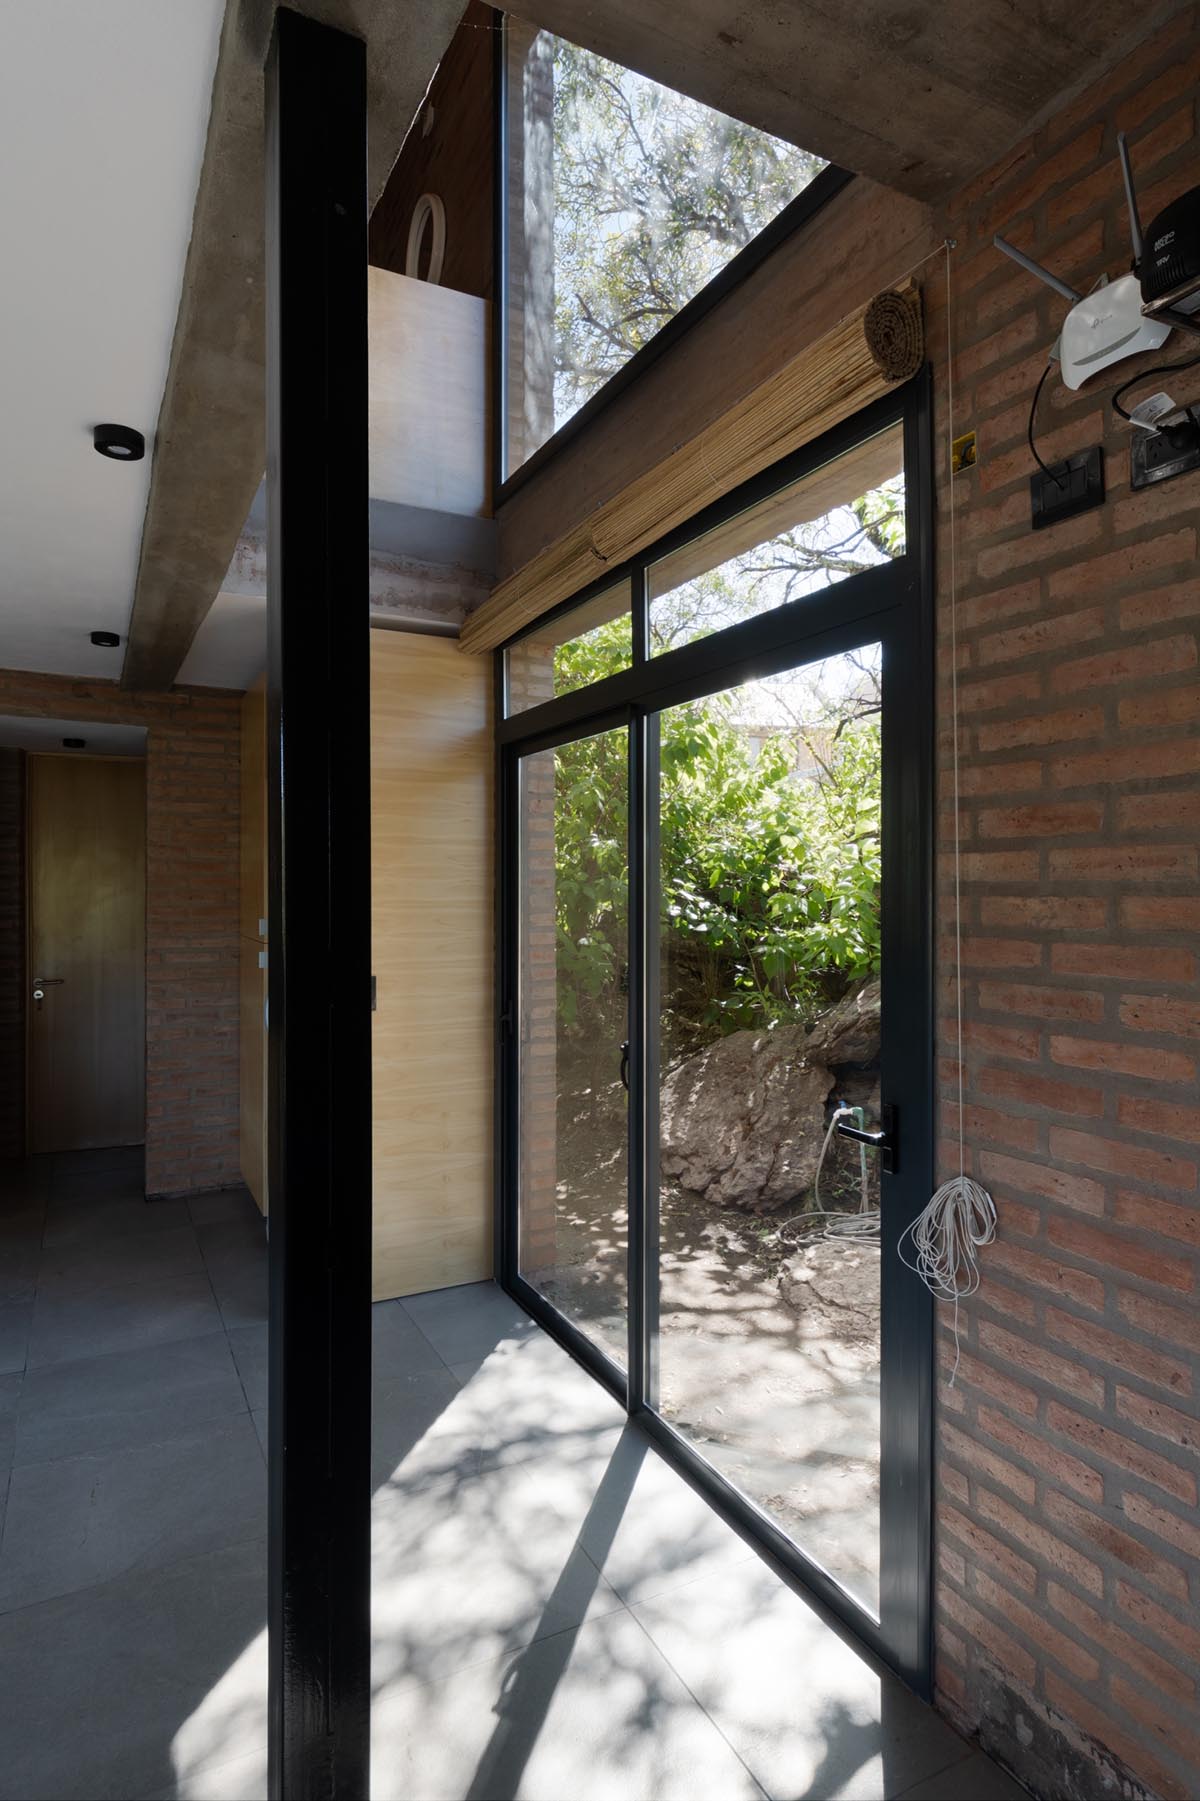 Taller Sur Arquitectura завершает строительство Casa Escondida в Кордове, Аргентина. 